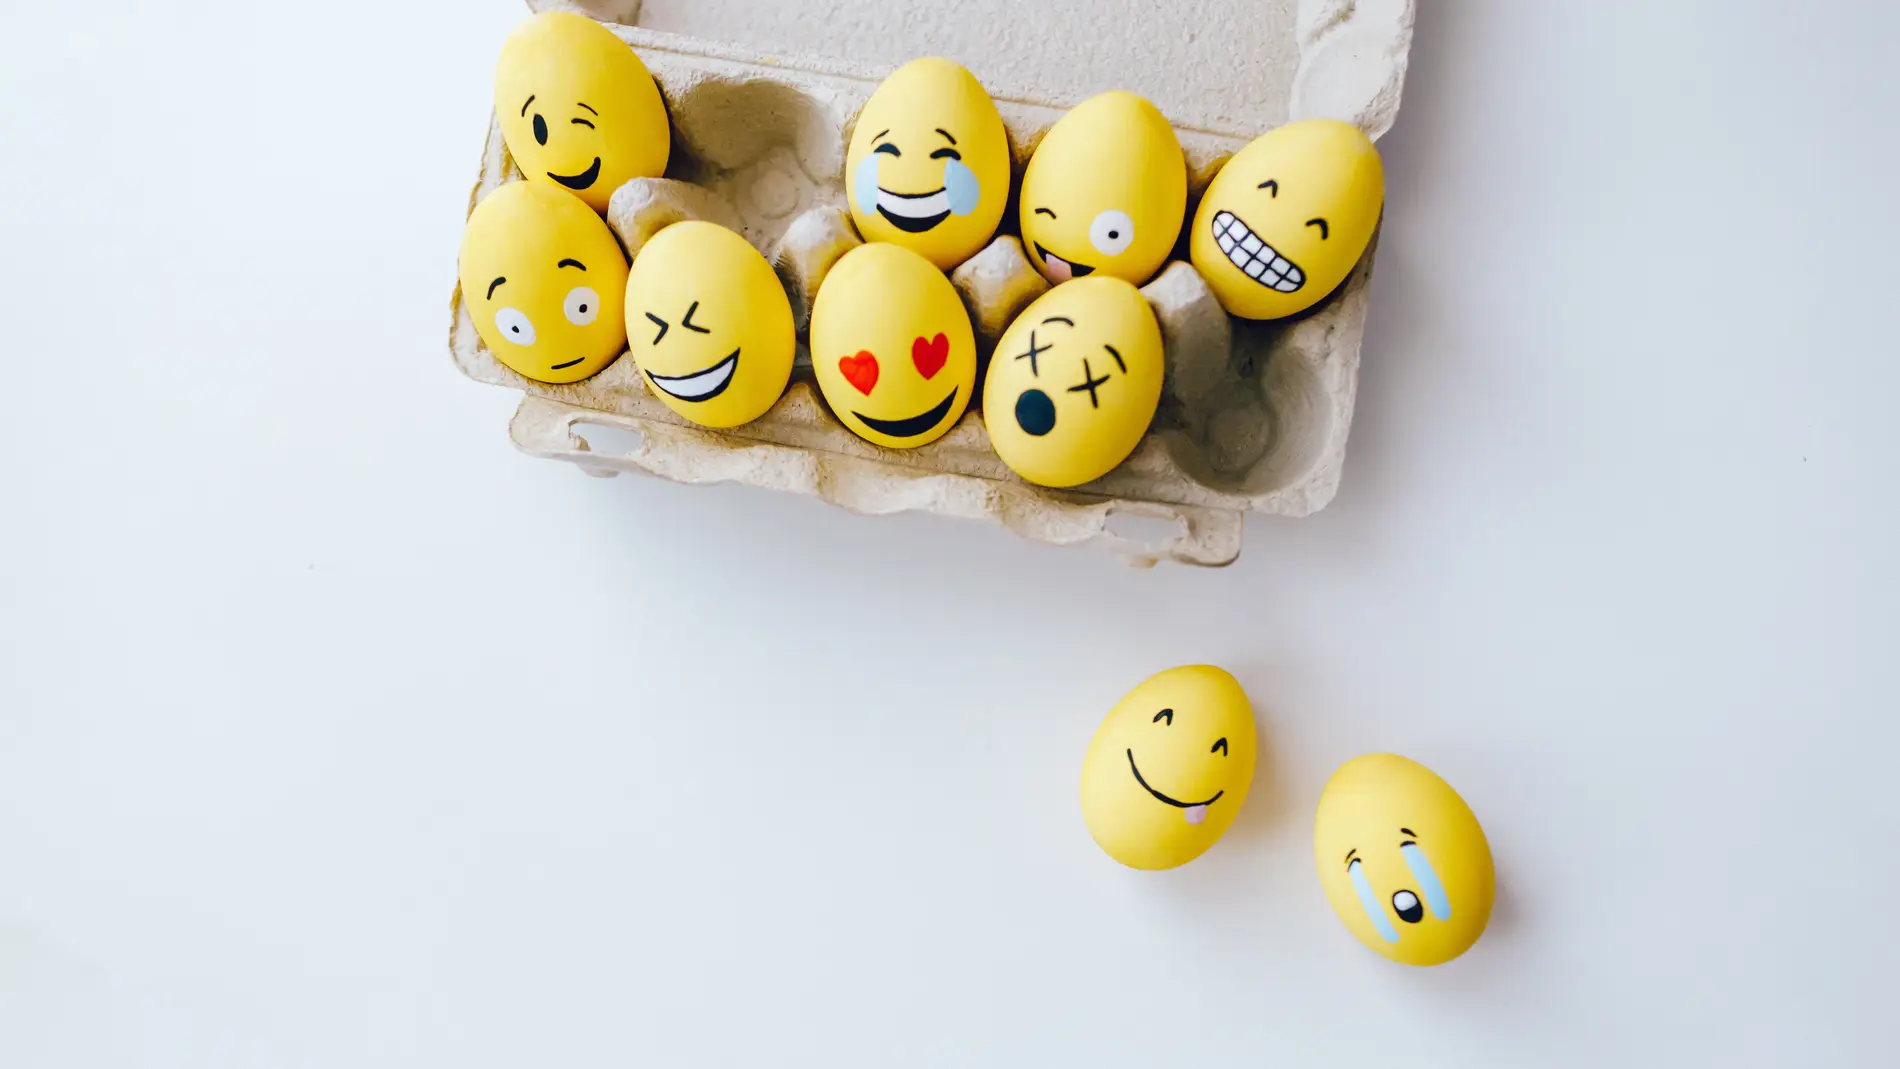 Emociones y caras en una huevera de emojis 